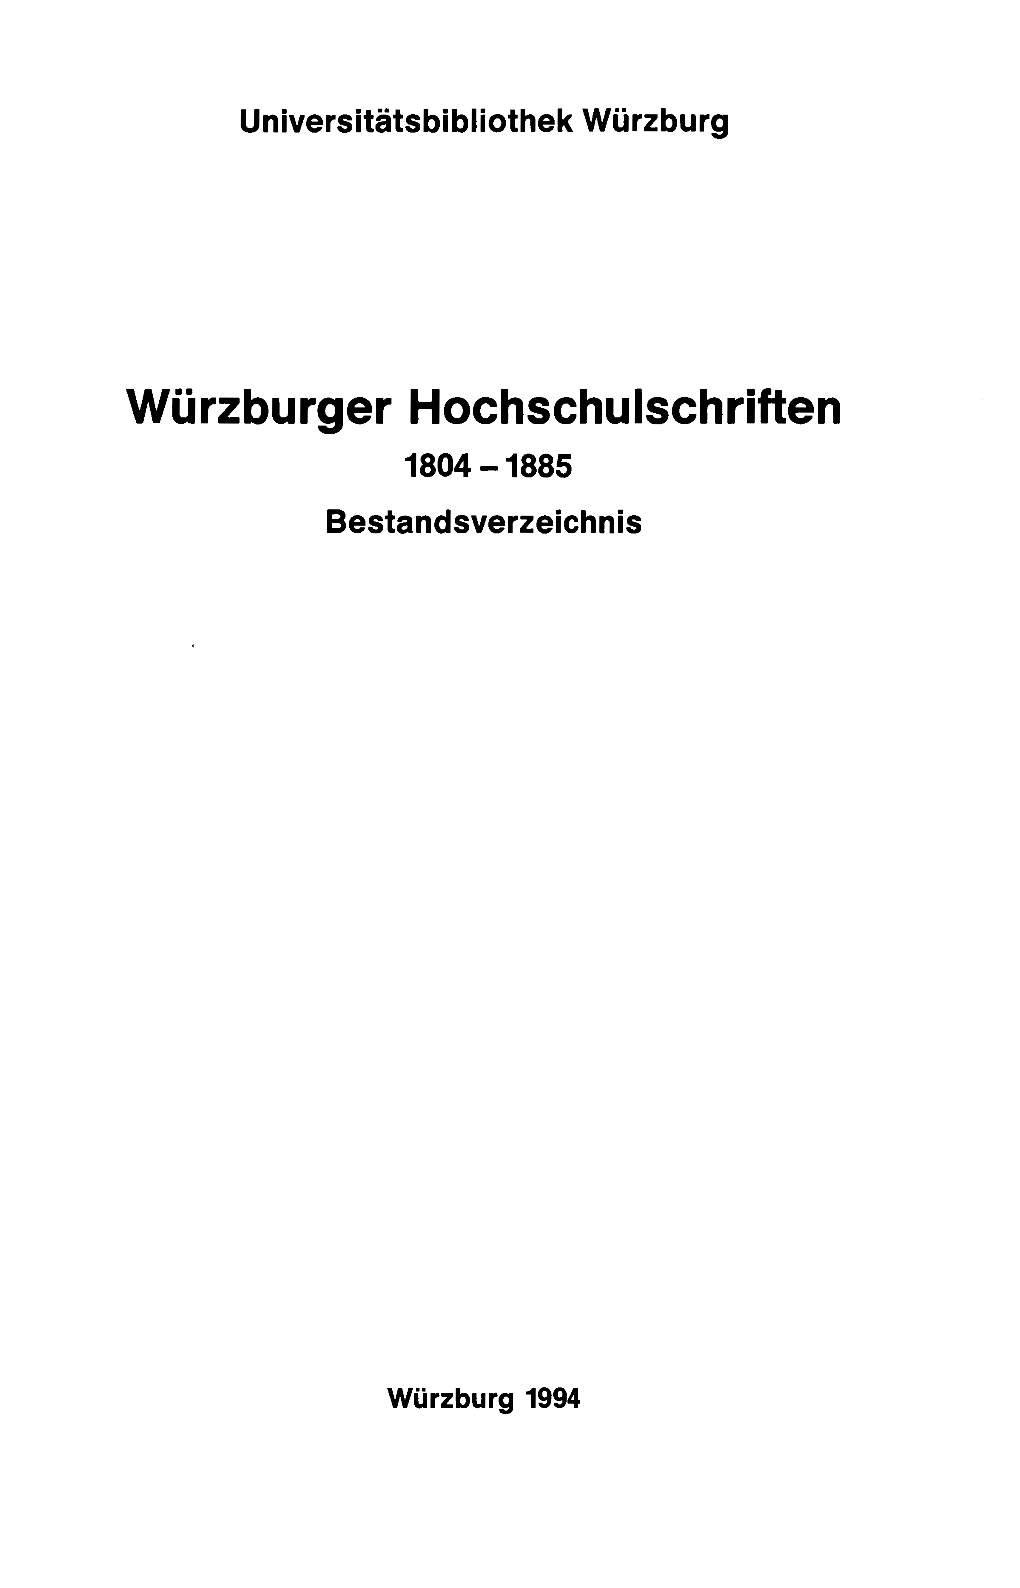 Würzburger Hochschulschriften 1804-1885 Bestandsverzeichnis